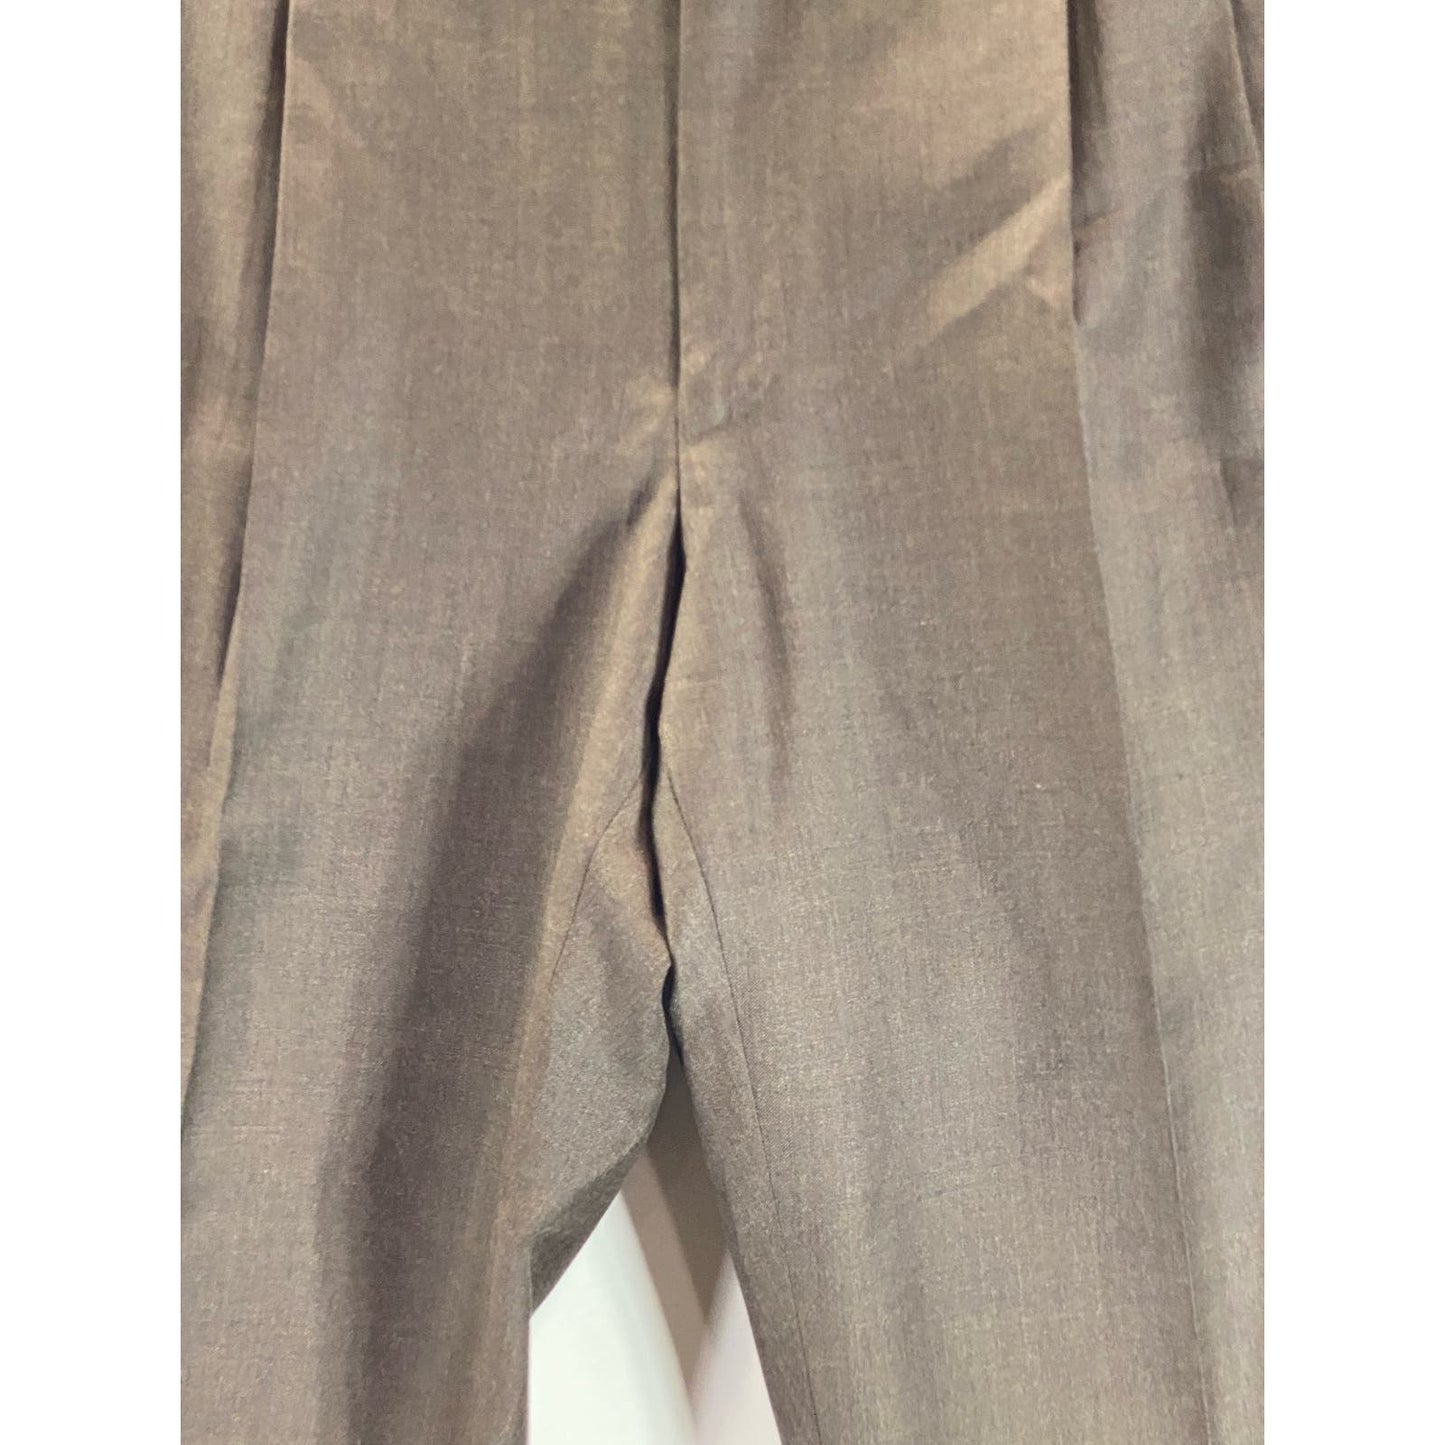 ERMENEGILDO ZEGNA Men's Brown Pleated Front Wool Suit Pants SZ 36